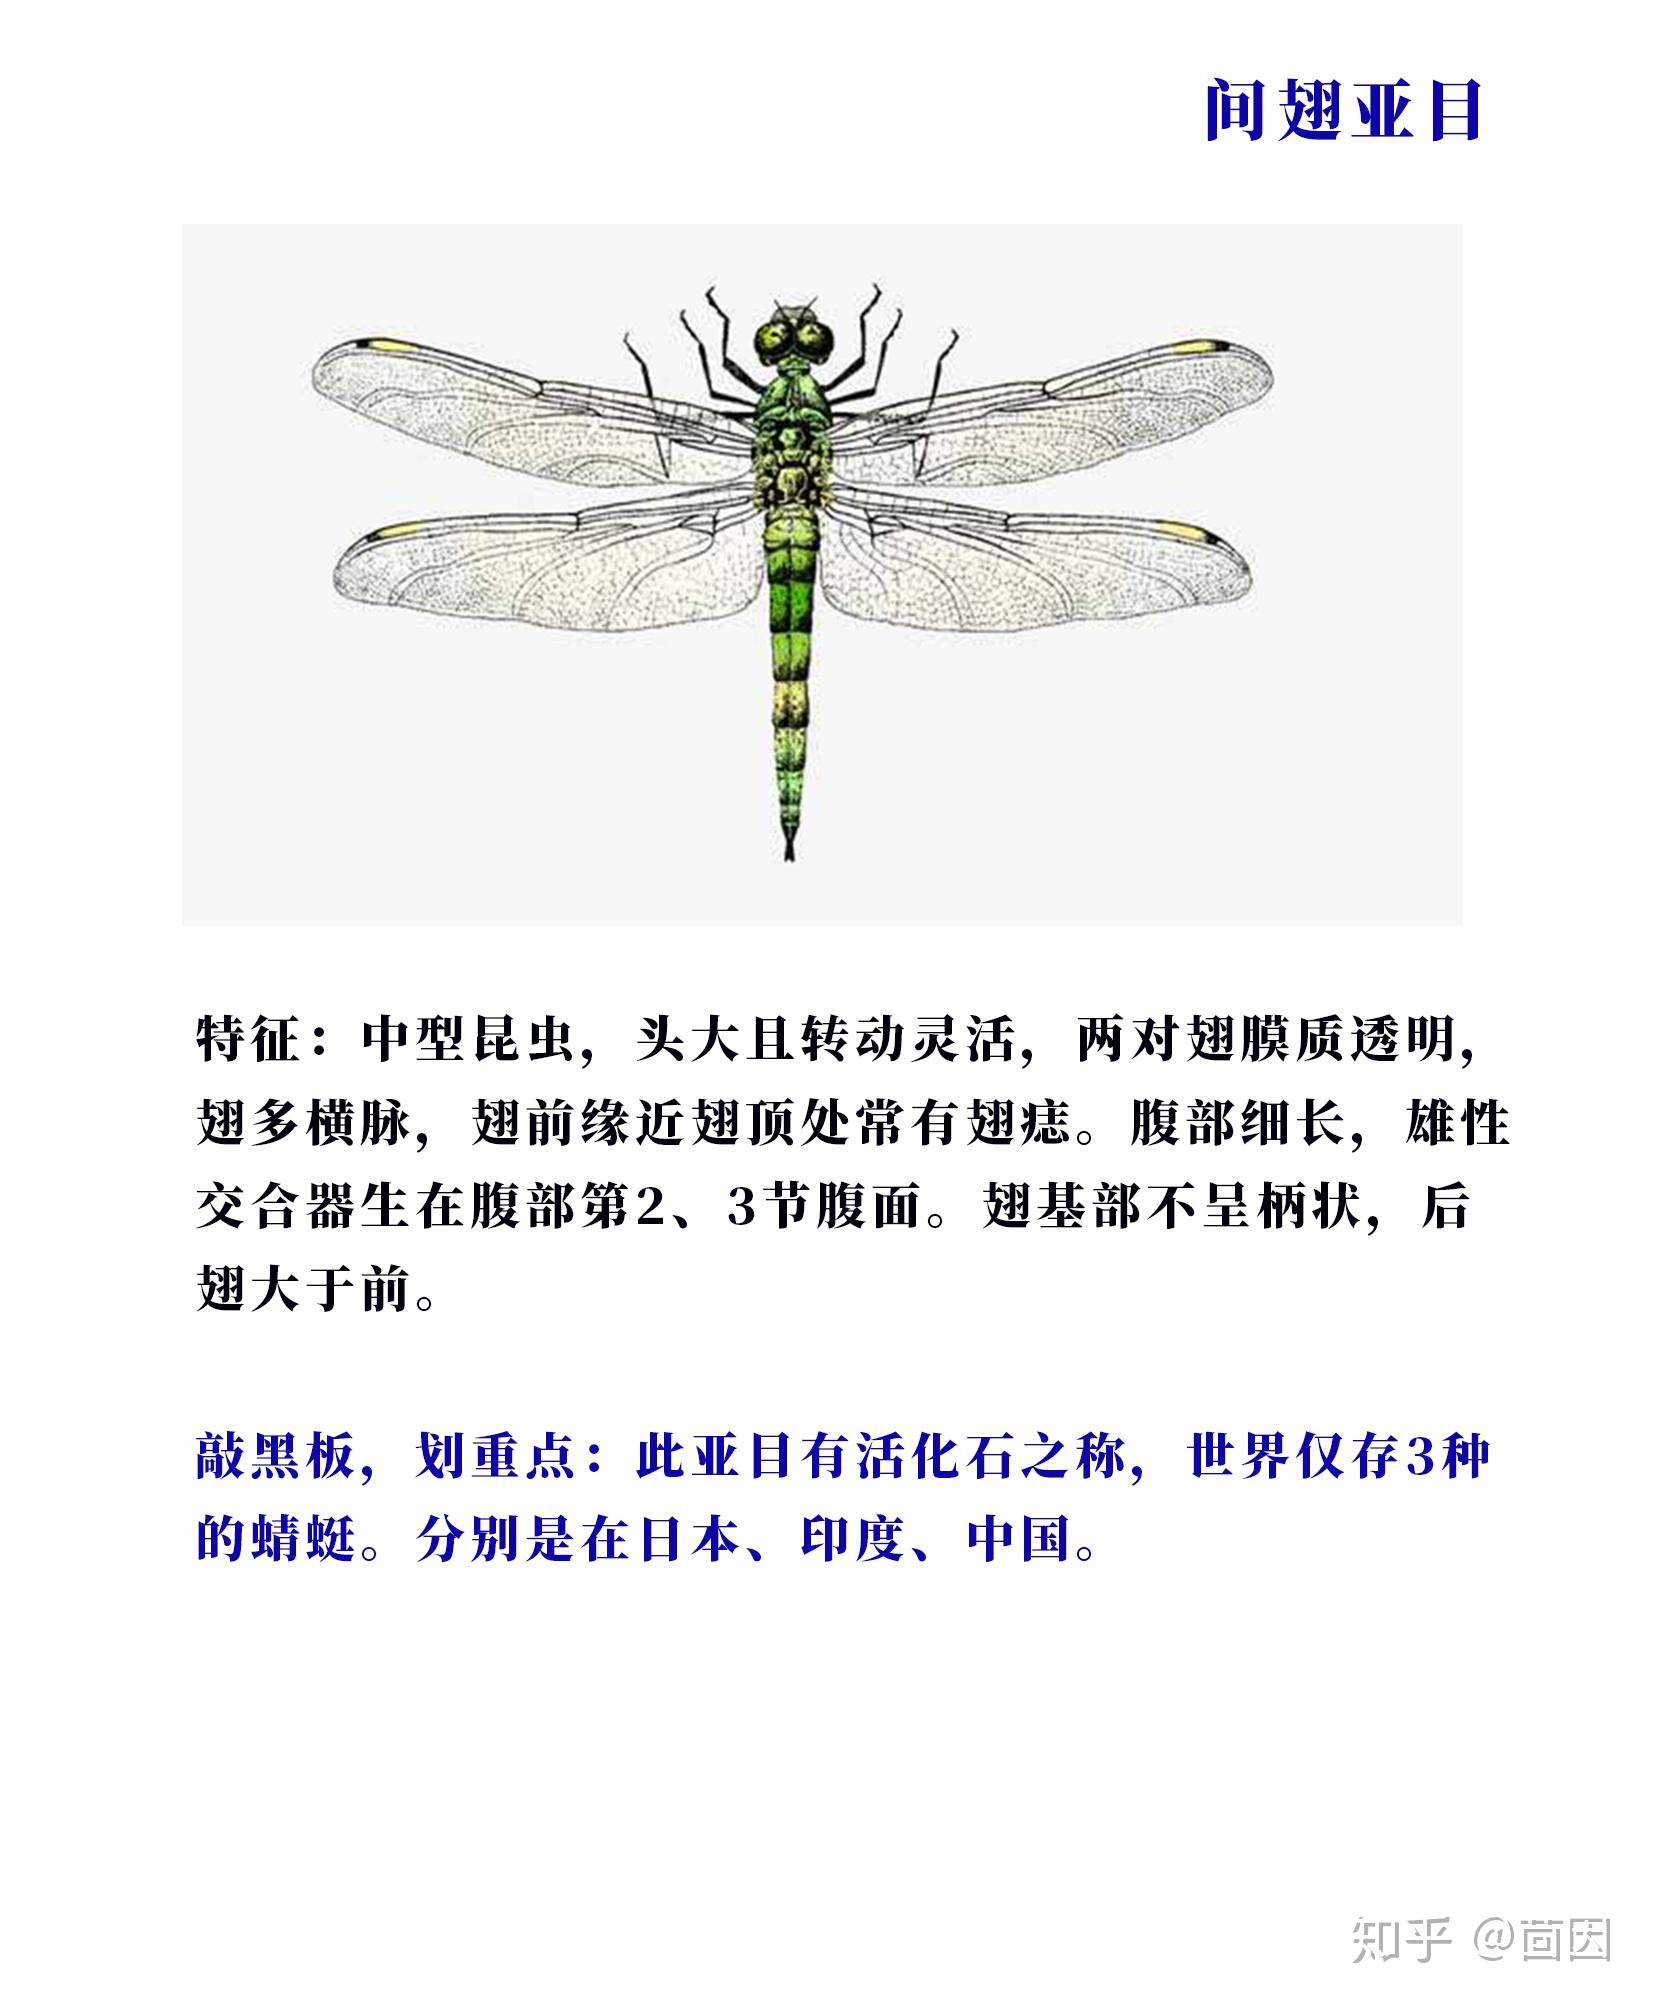 蜻蜓的介绍（有关于蜻蜓的资料） – 碳资讯